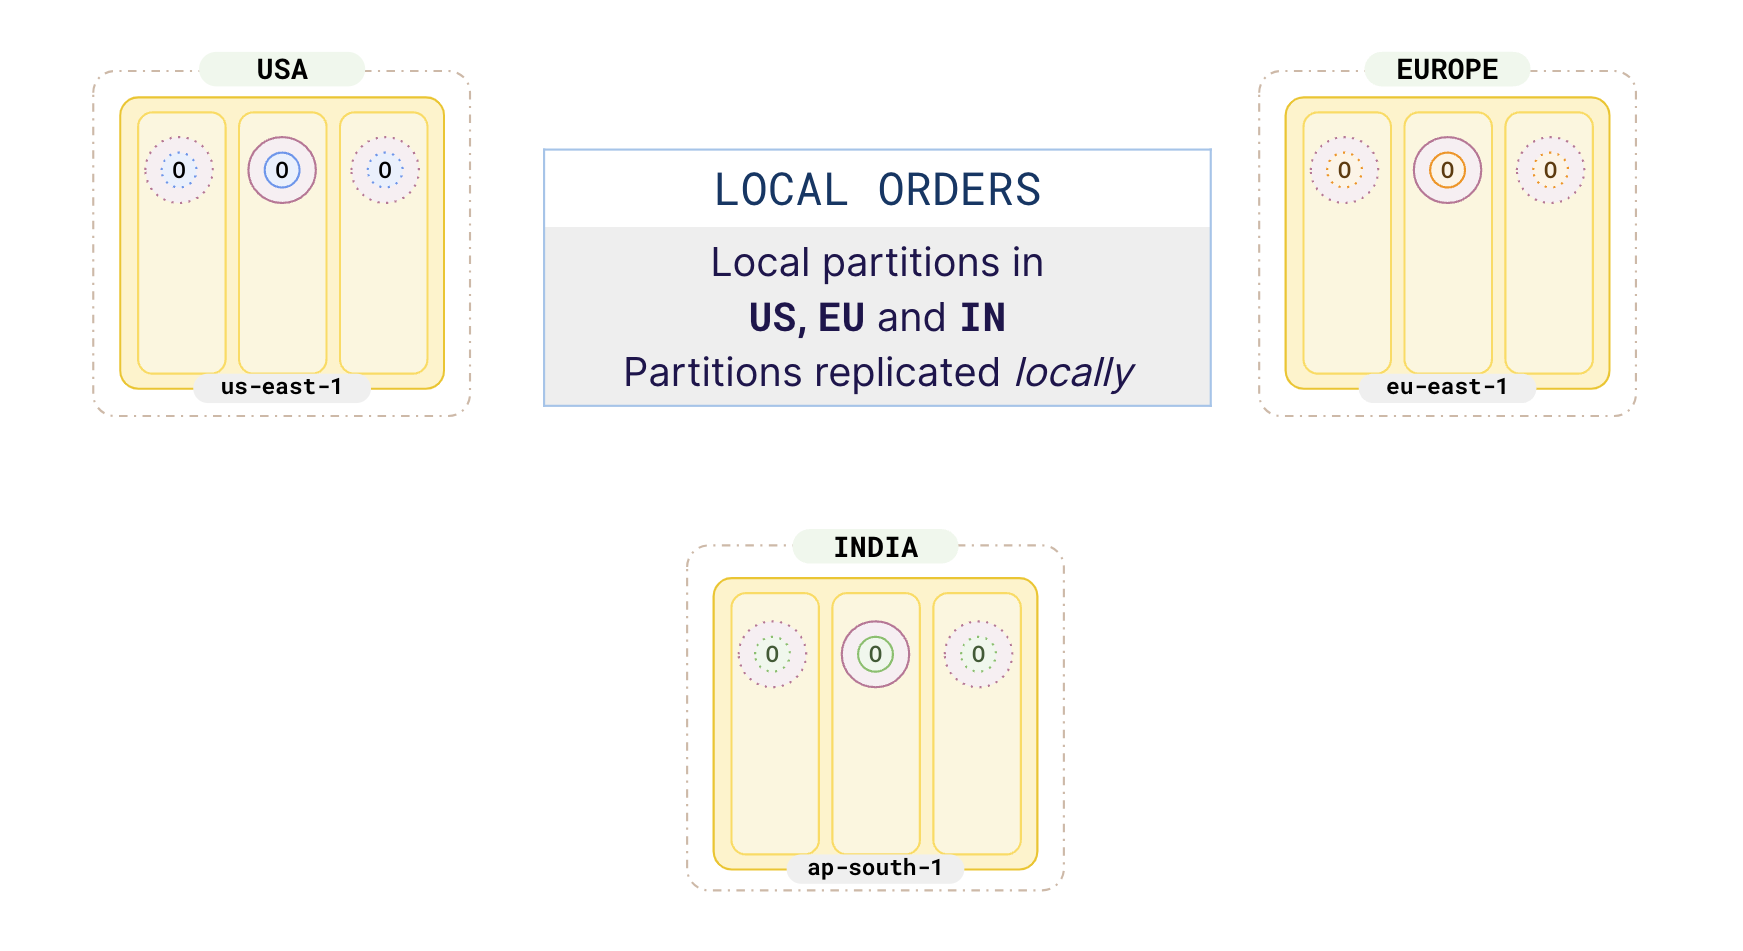 Local orders in 3 regions